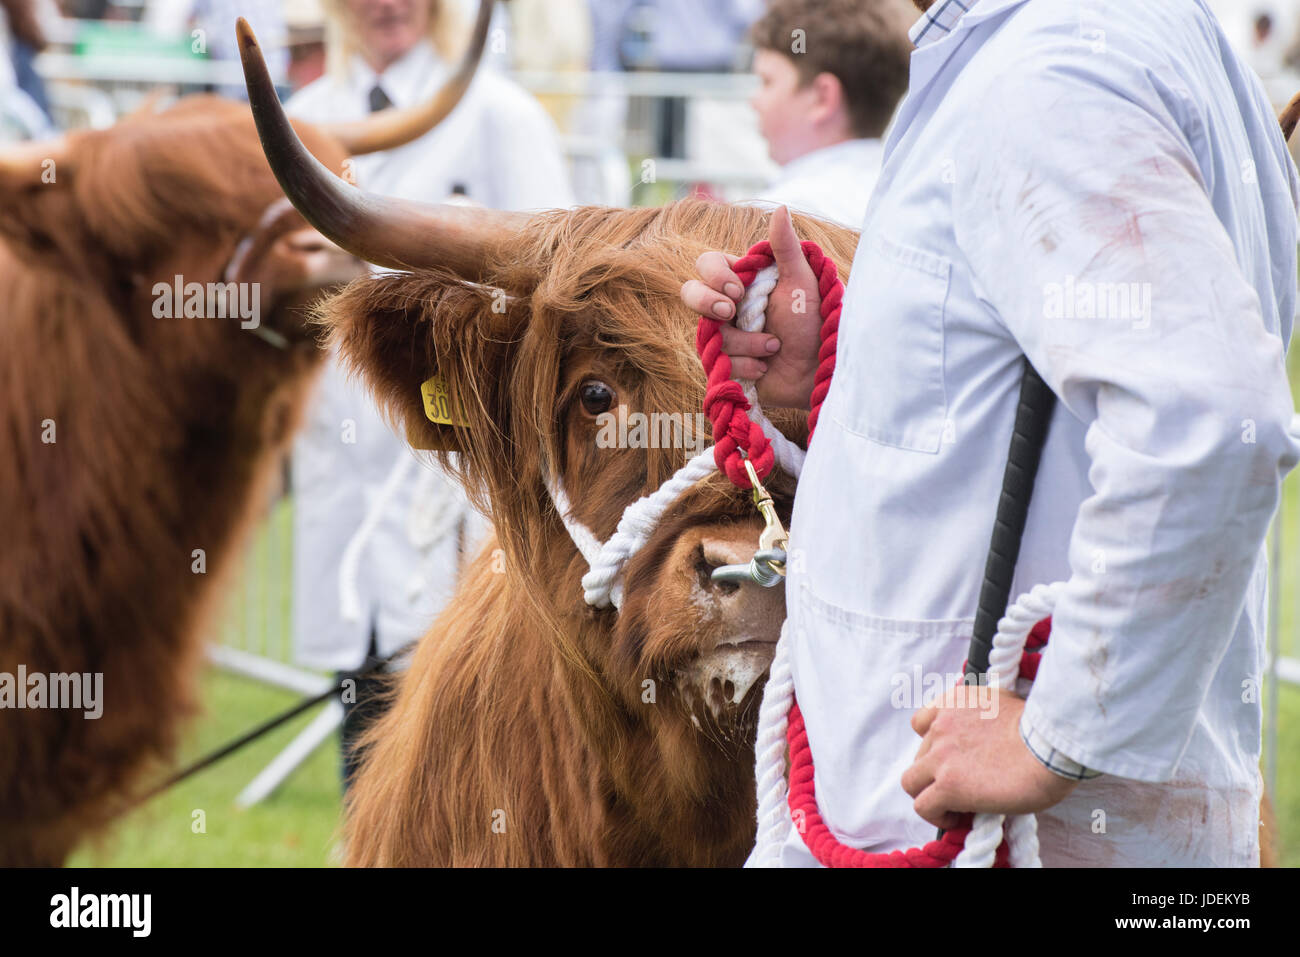 Taureau BOS. Highland Cows en exposition lors d'un spectacle agricole. ROYAUME-UNI Banque D'Images